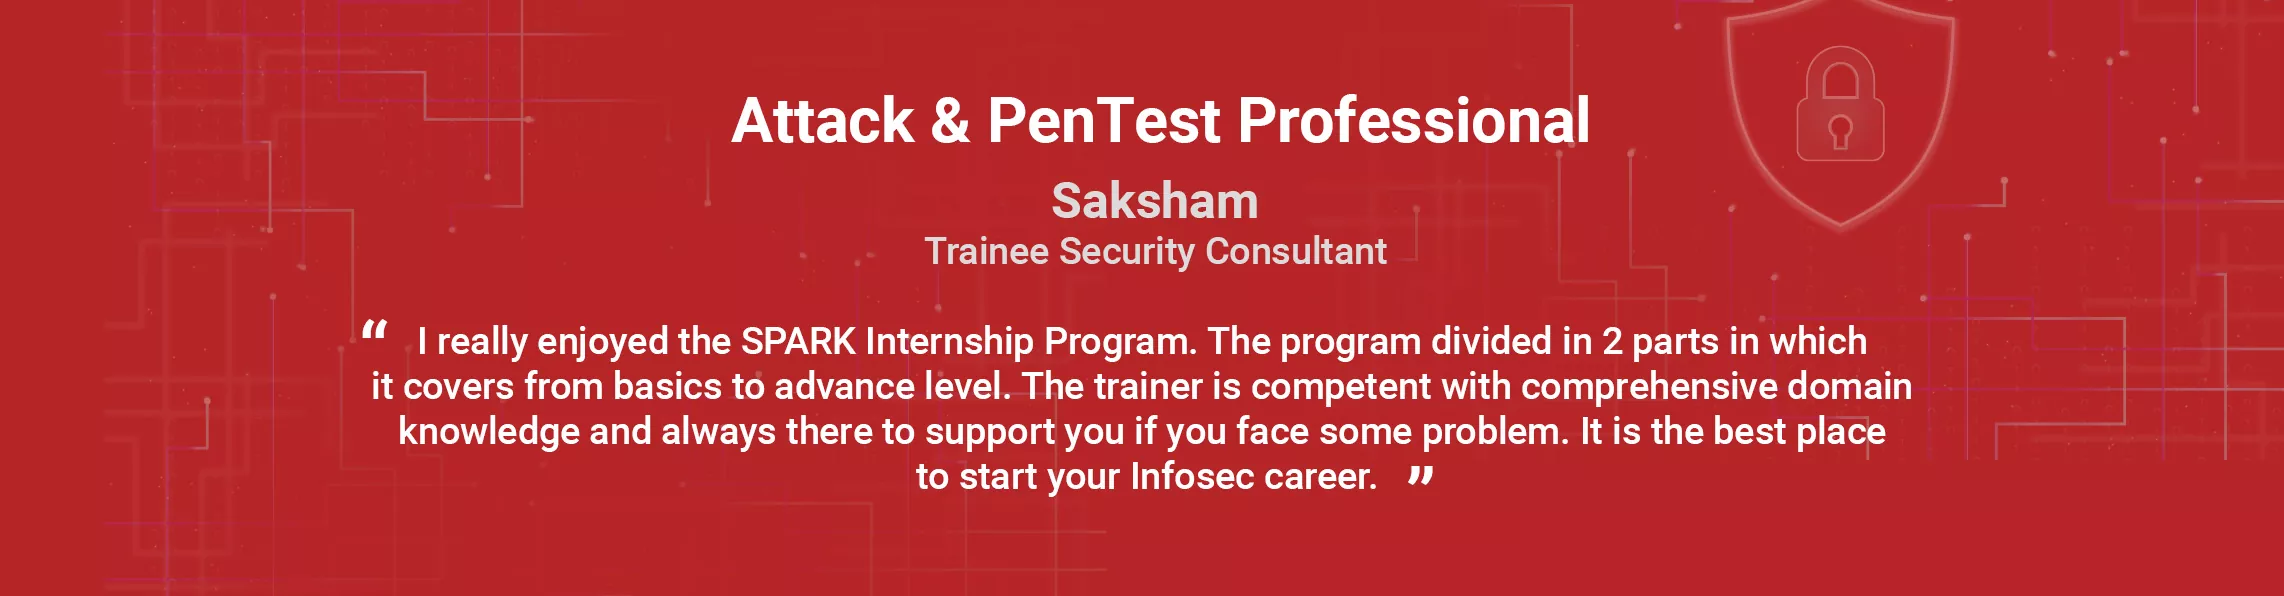 Cyber Security Training Cyber Security Training Saksham Testimonial